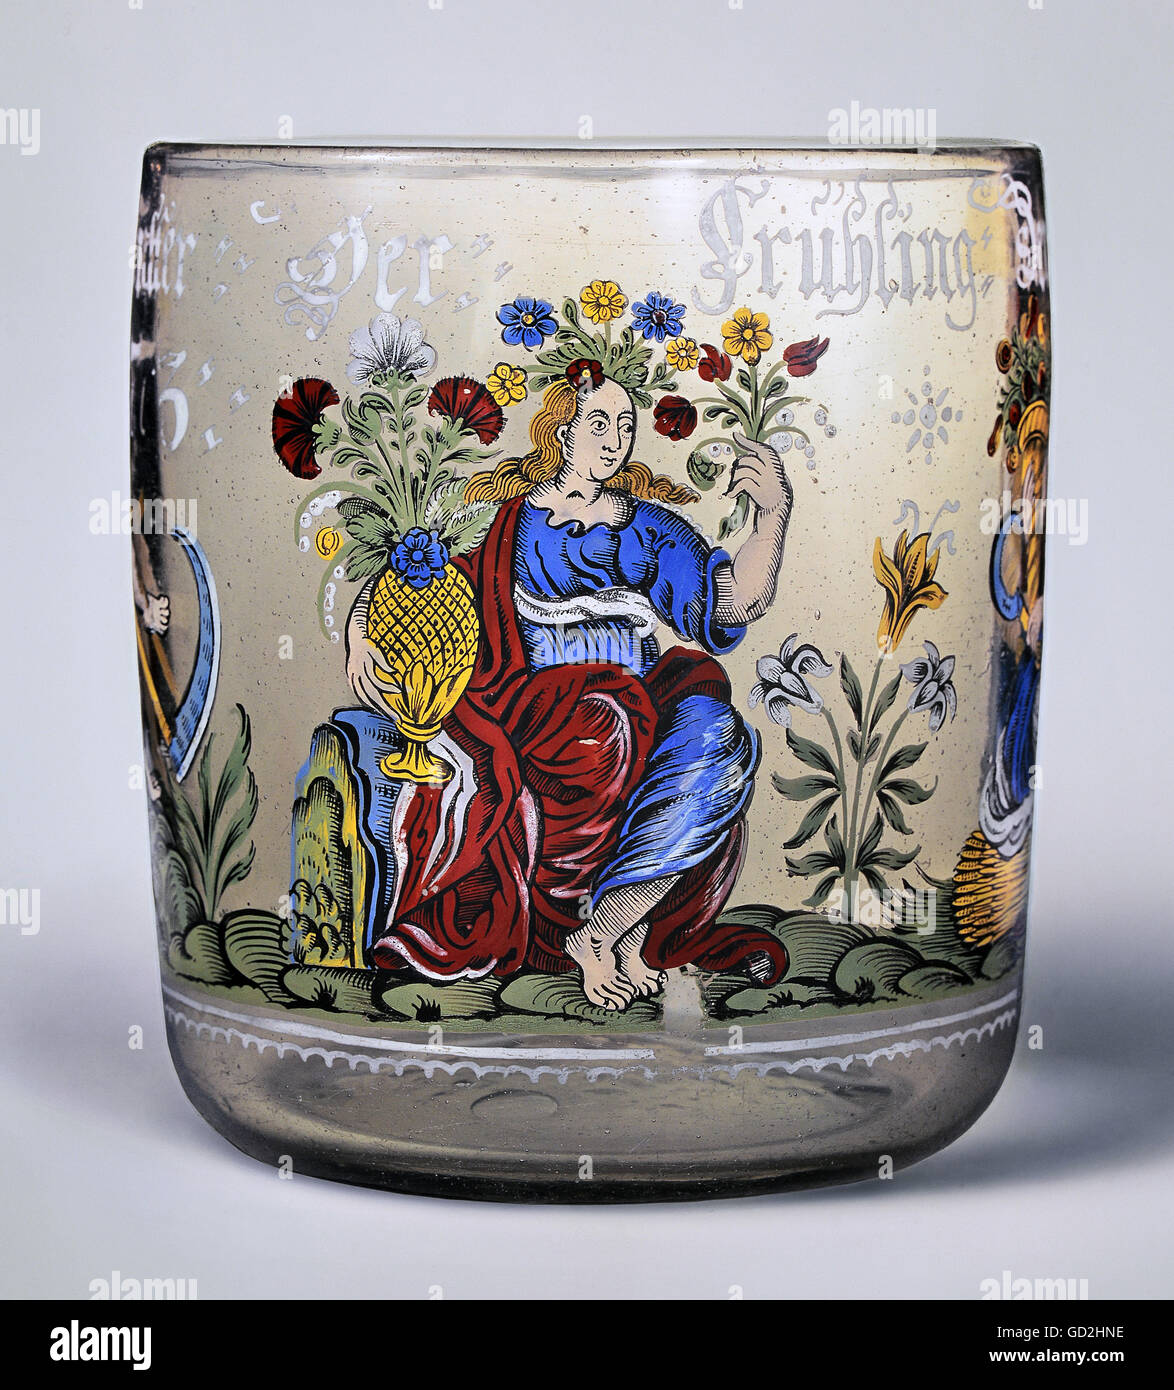 Bildende Kunst, Malerei, Jahreszeiten Becher, Frühling, junge Frau mit Kranz und Vase, 1675, Artist's Urheberrecht nicht gelöscht werden Stockfoto